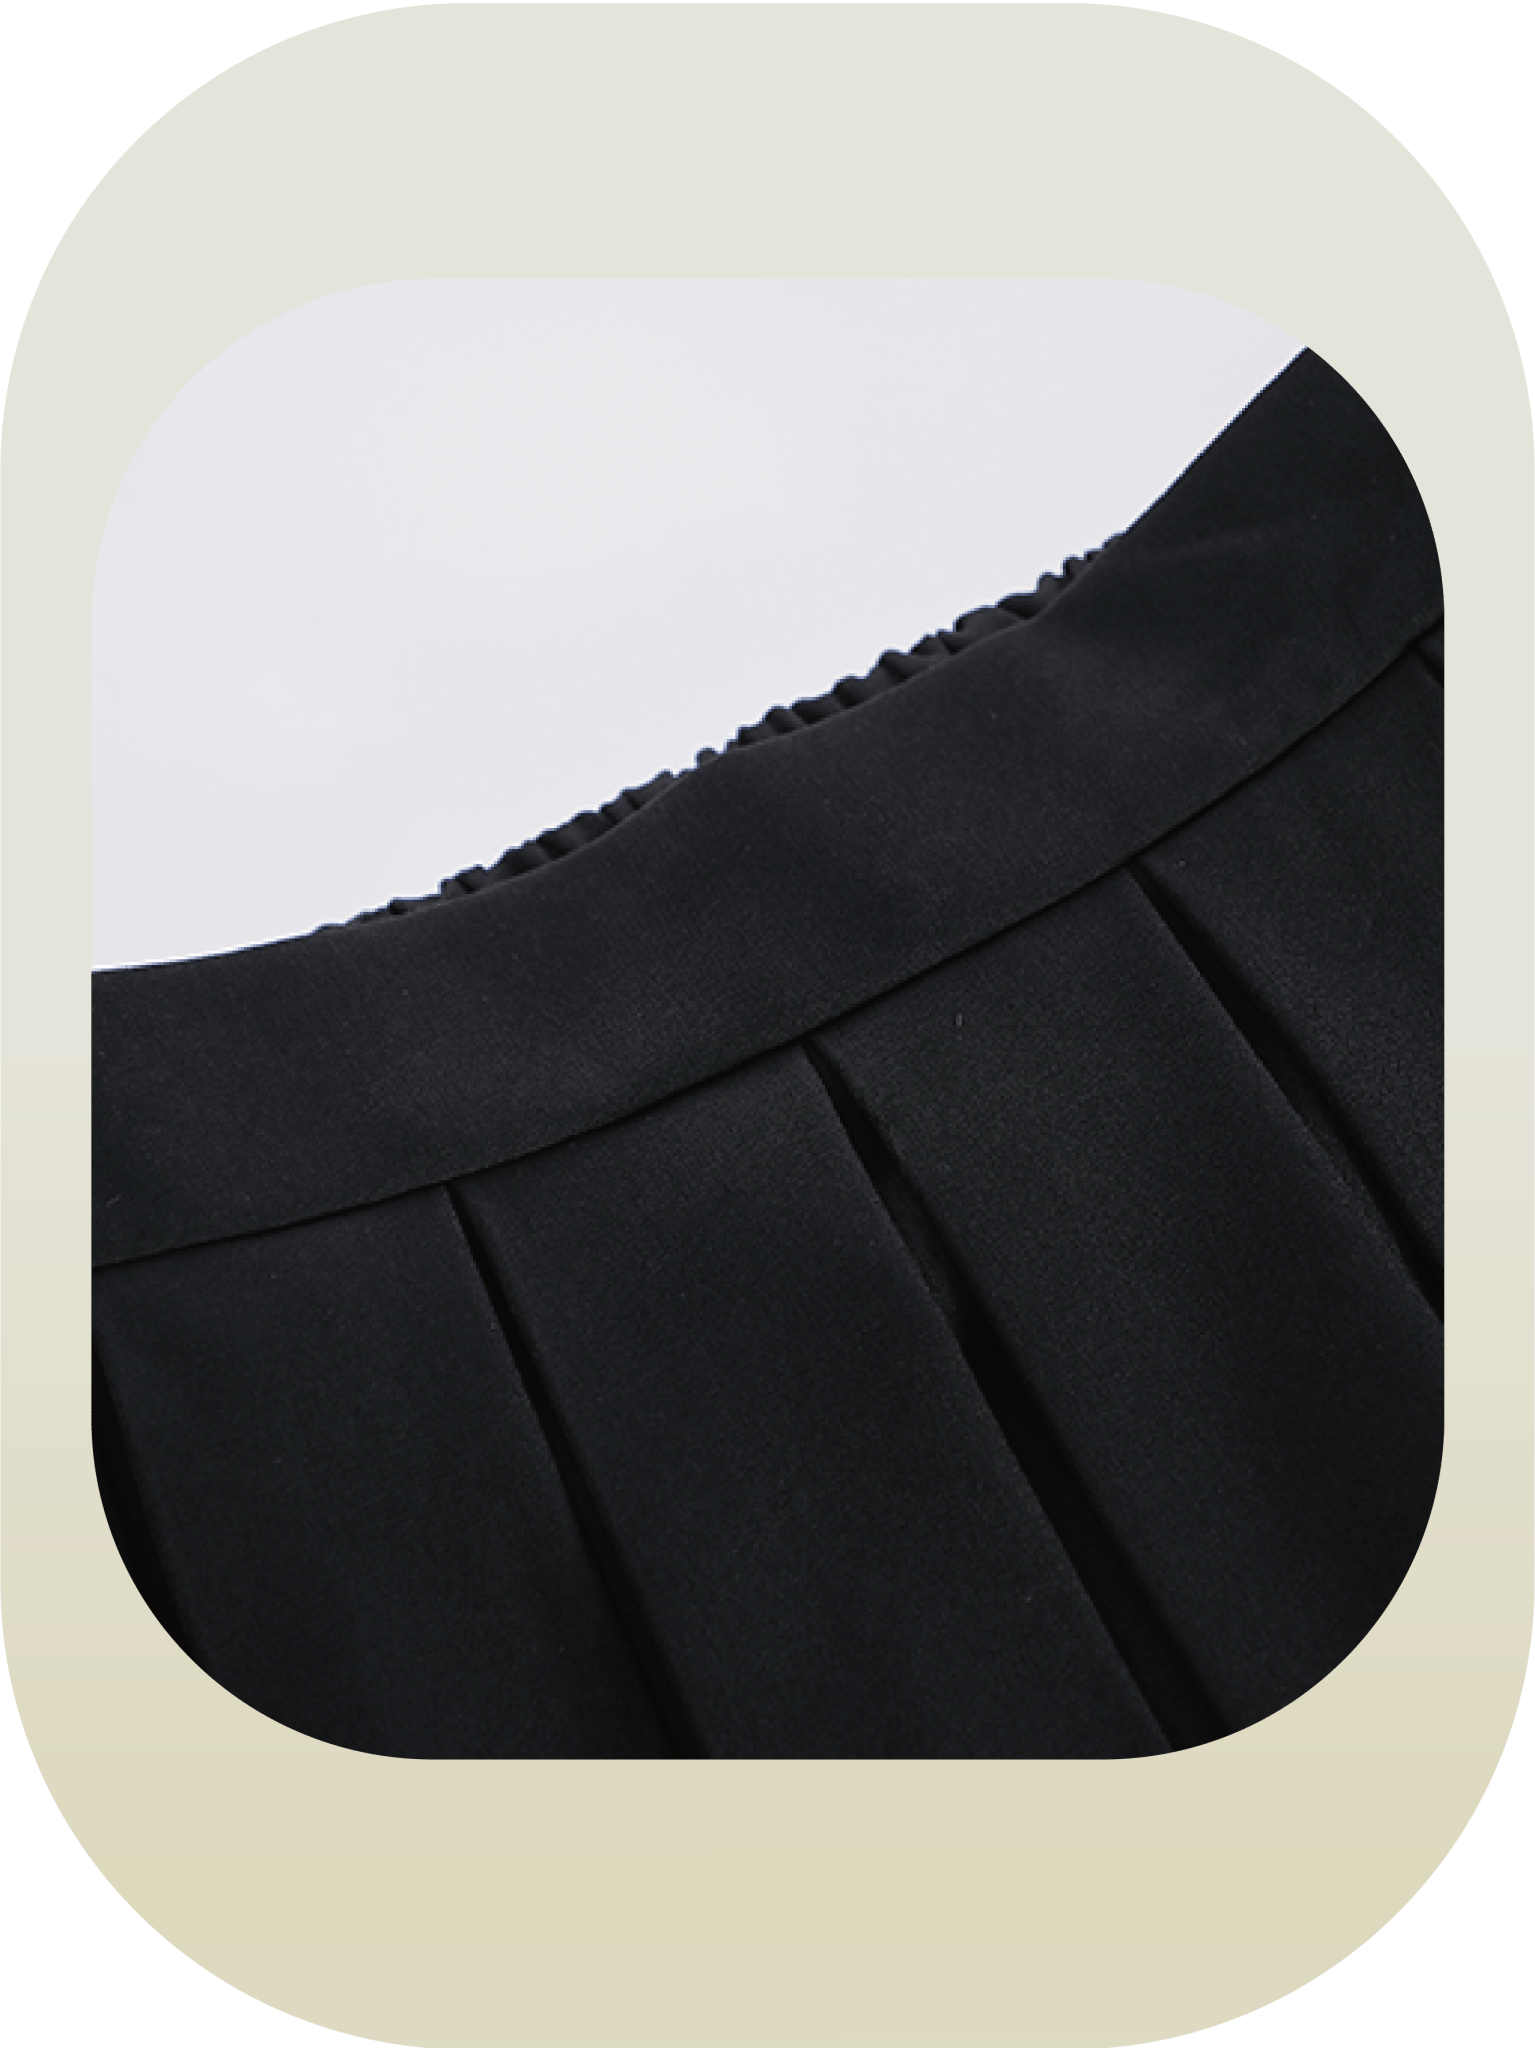 Elegant Pleats Skirt - LOVE POMME POMME